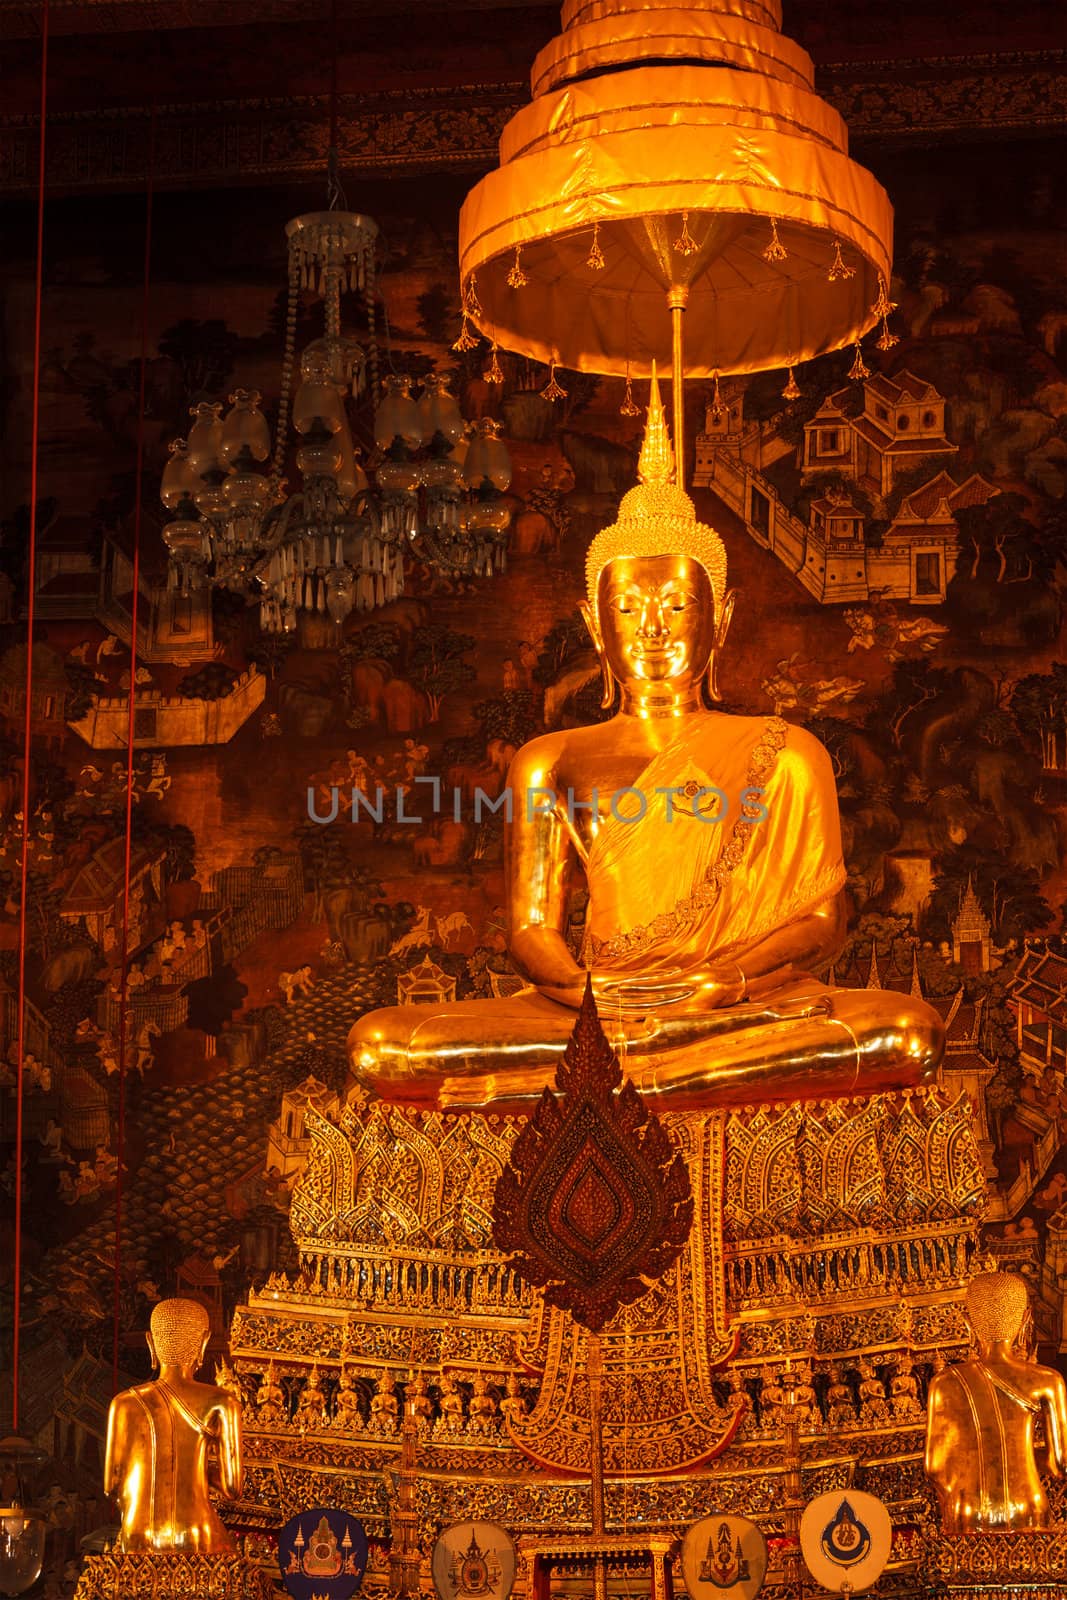 Sitting Buddha statue, Thailand by dimol